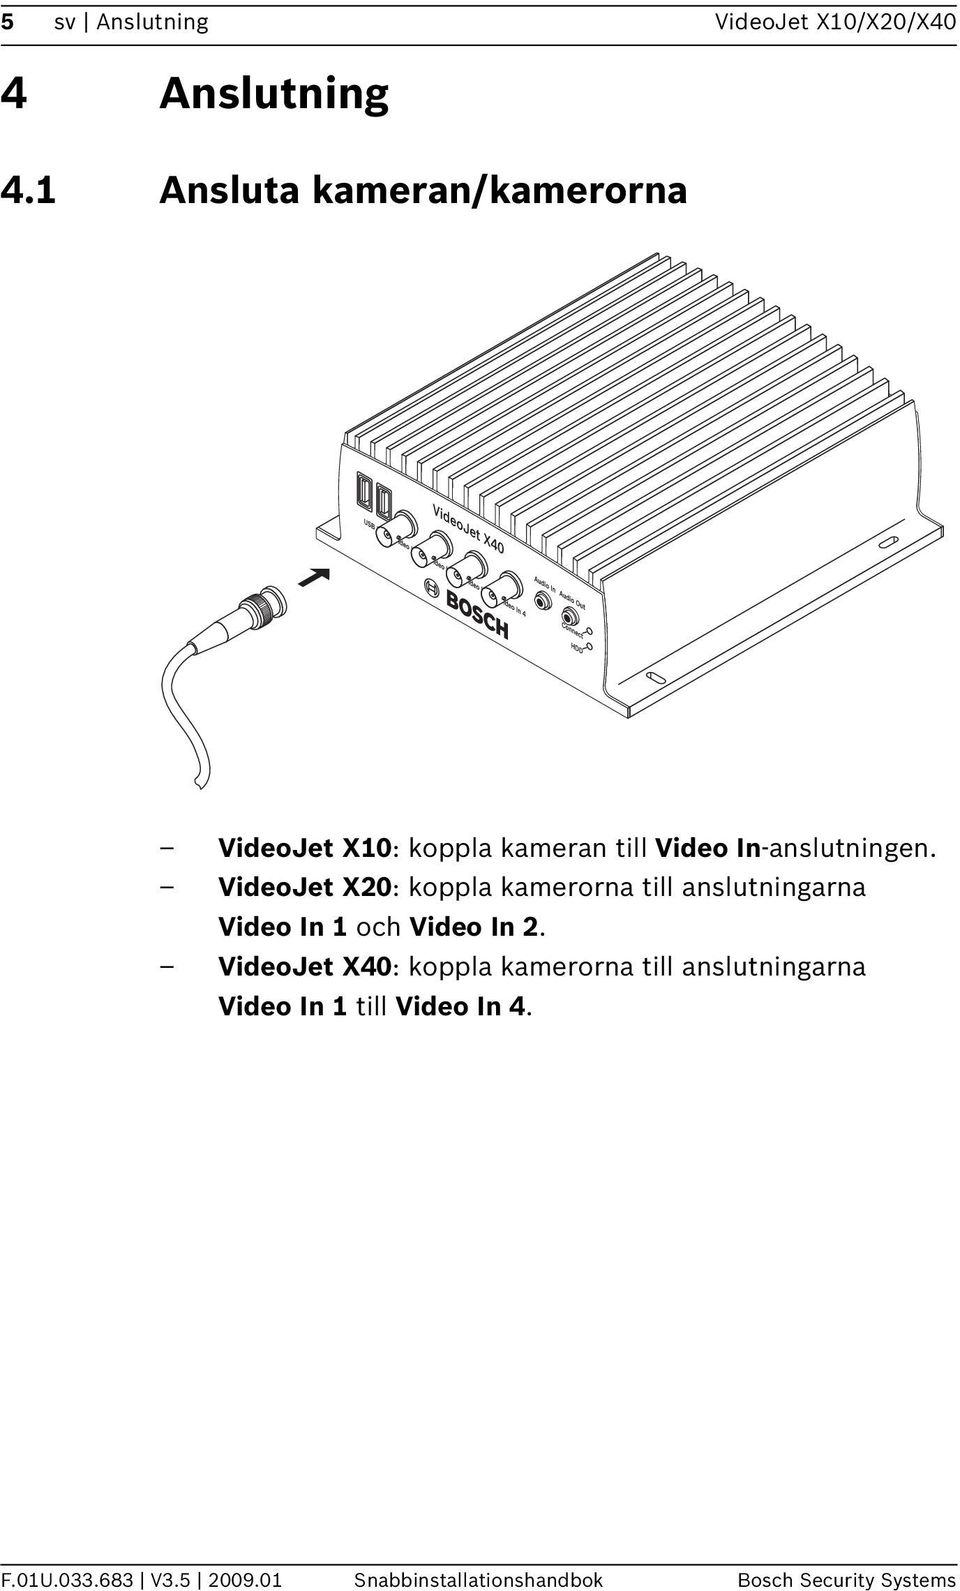 VideoJet X20: koppla kamerorna till anslutningarna Video In 1 och Video In 2.